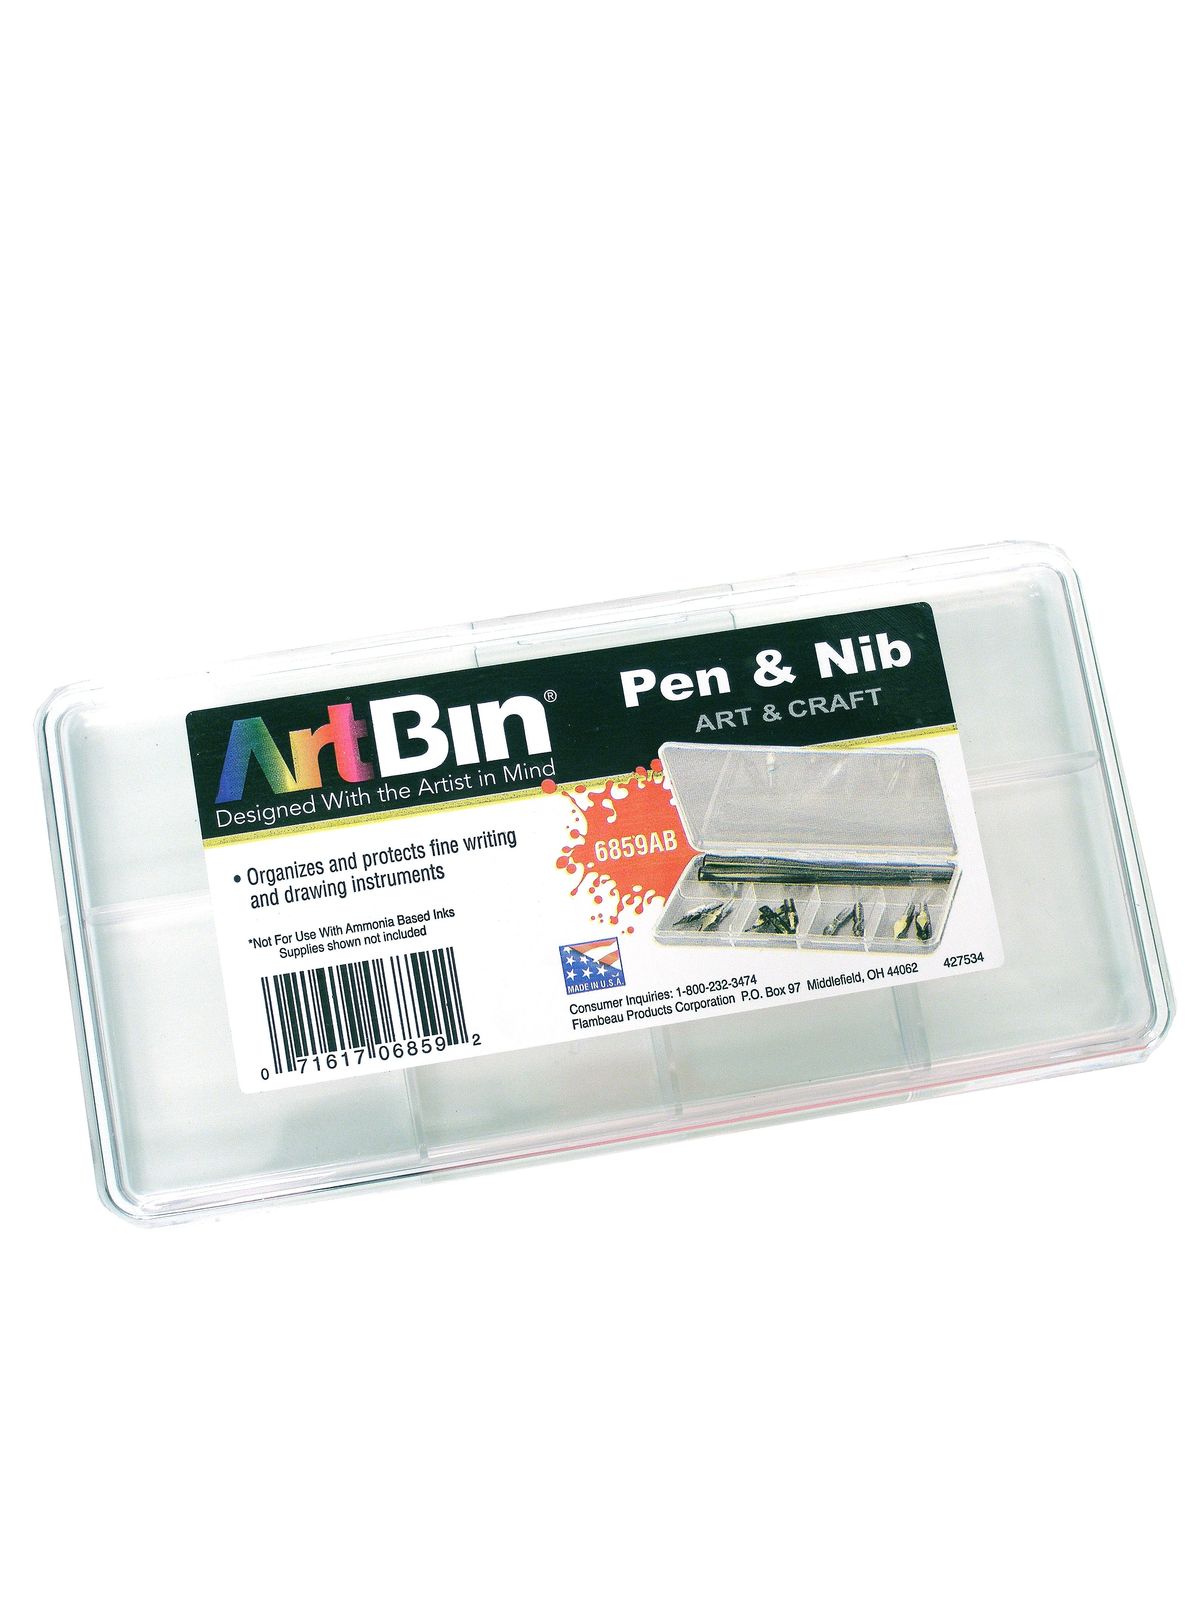 Pen & Nib Box Pen And Nib Box